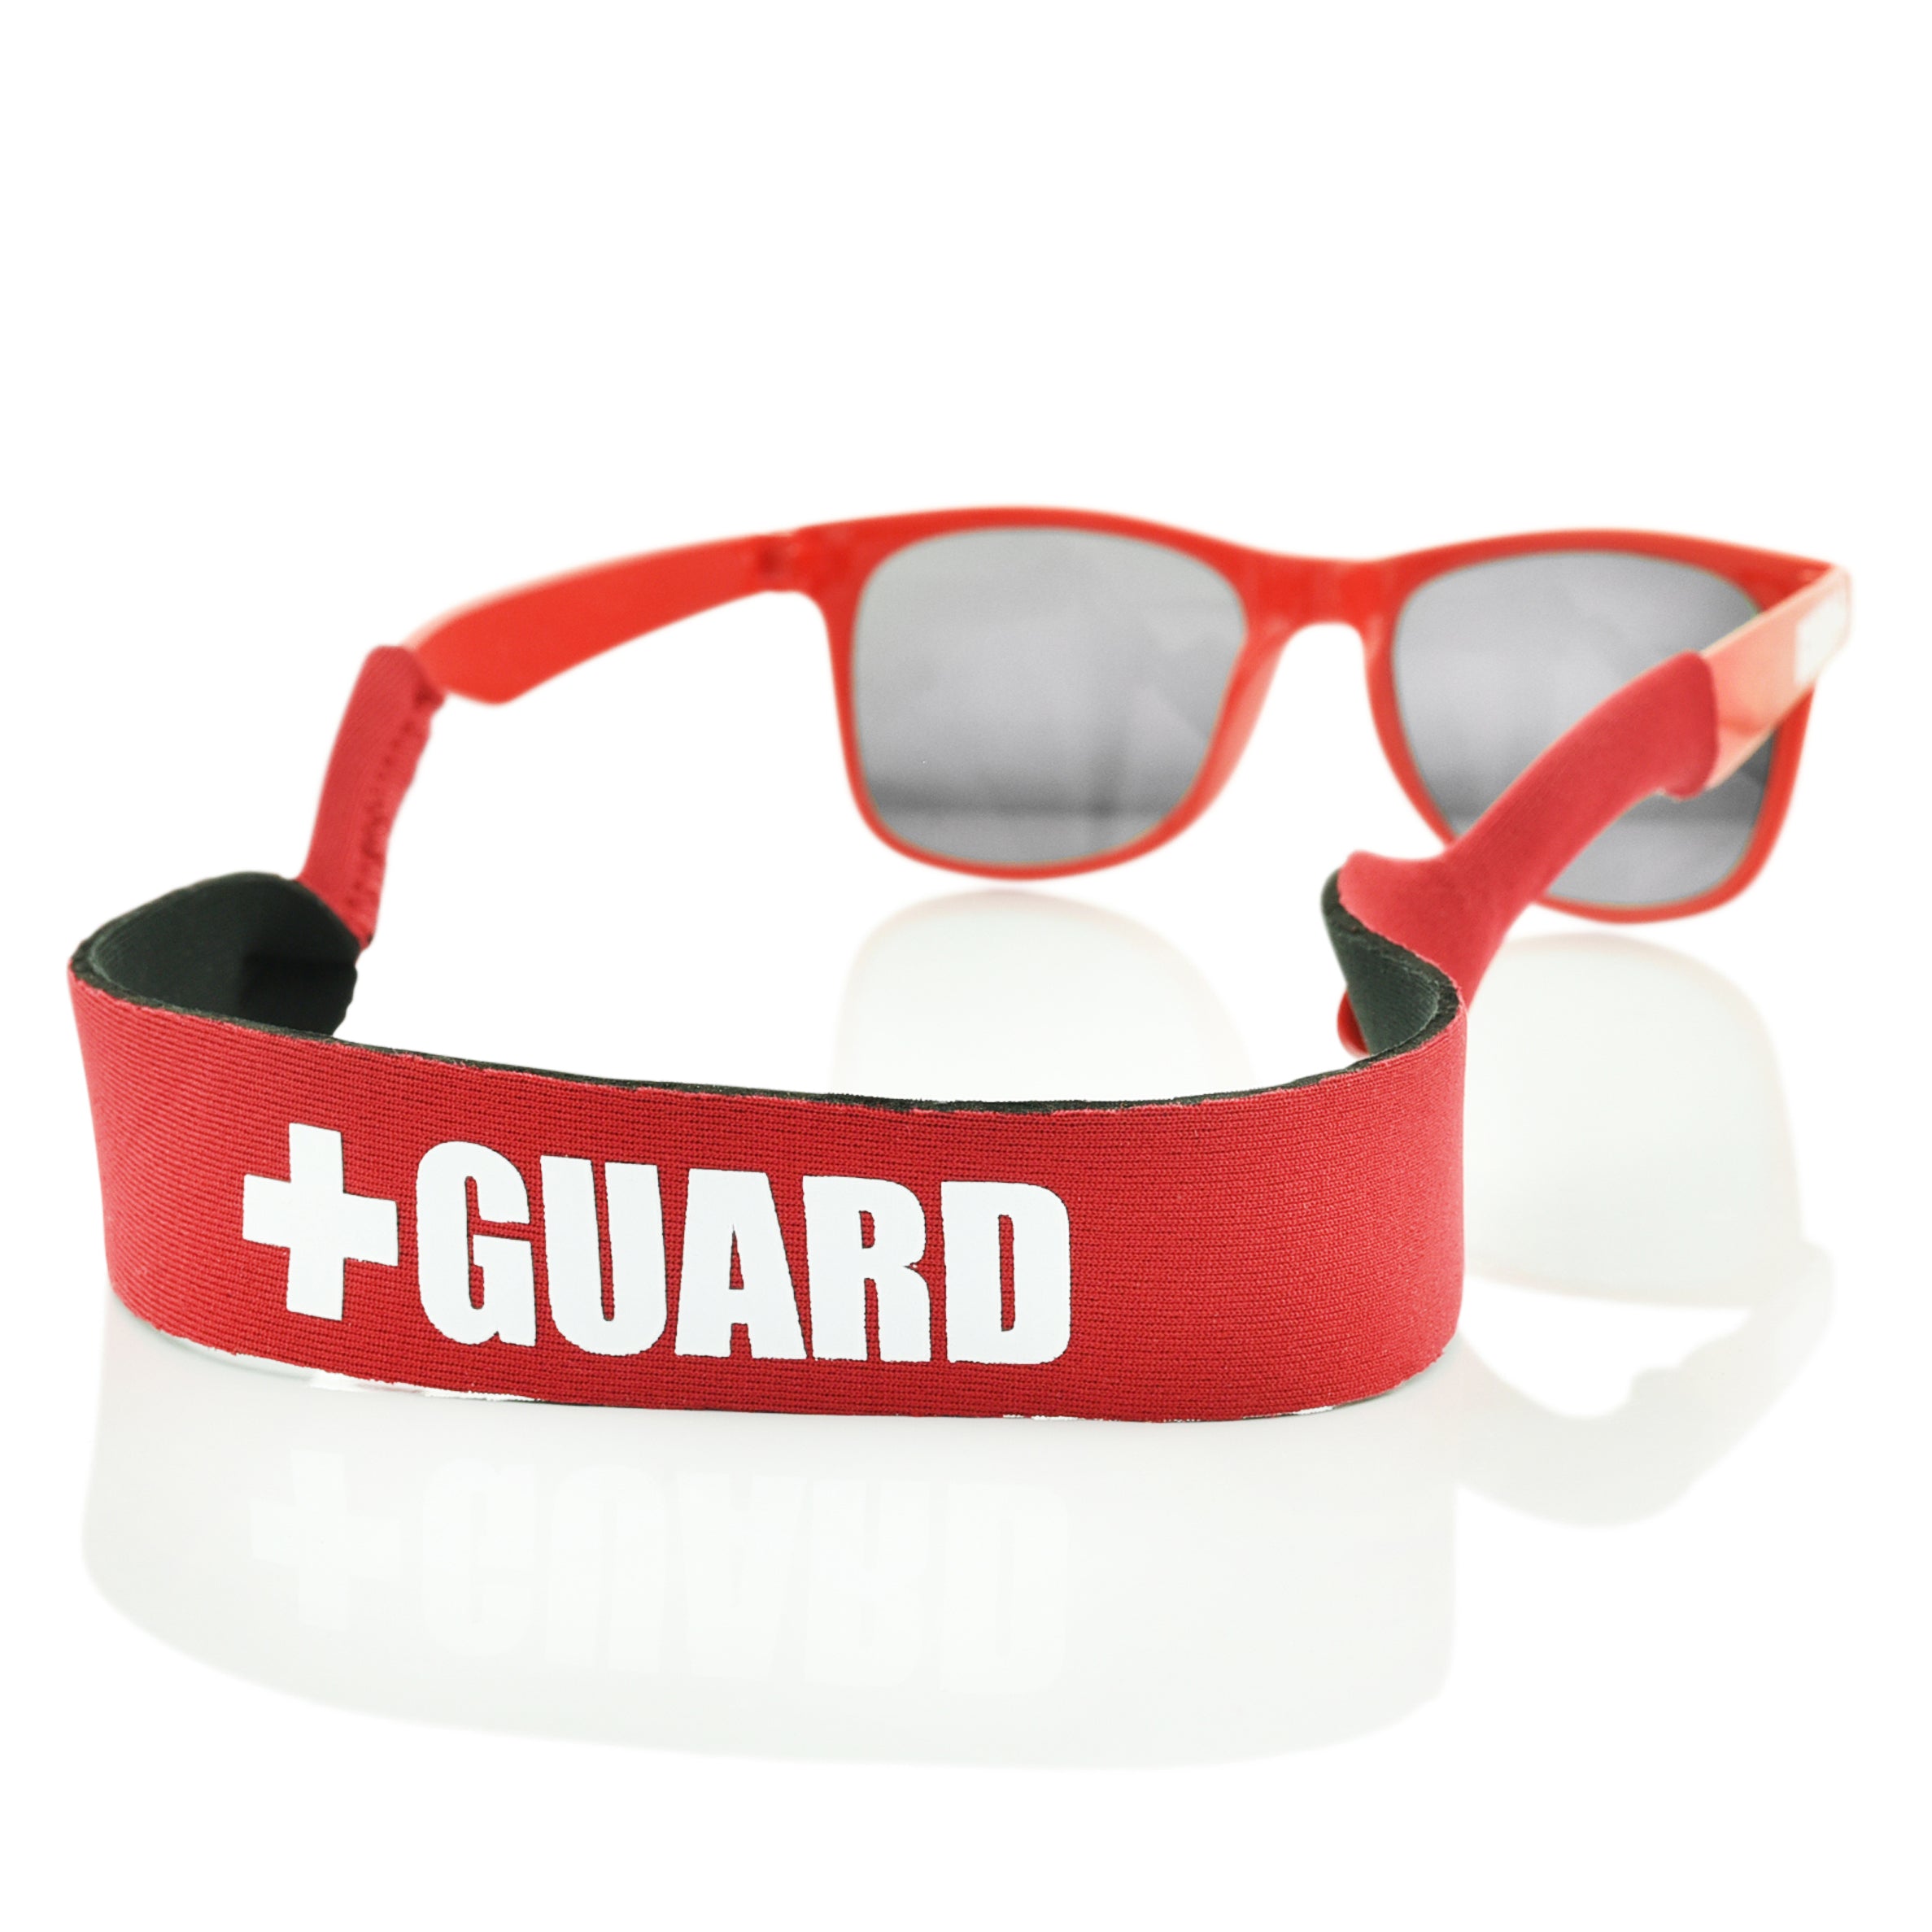 BLARIX Lifeguard Costume Accessories Kit Trucker / Red